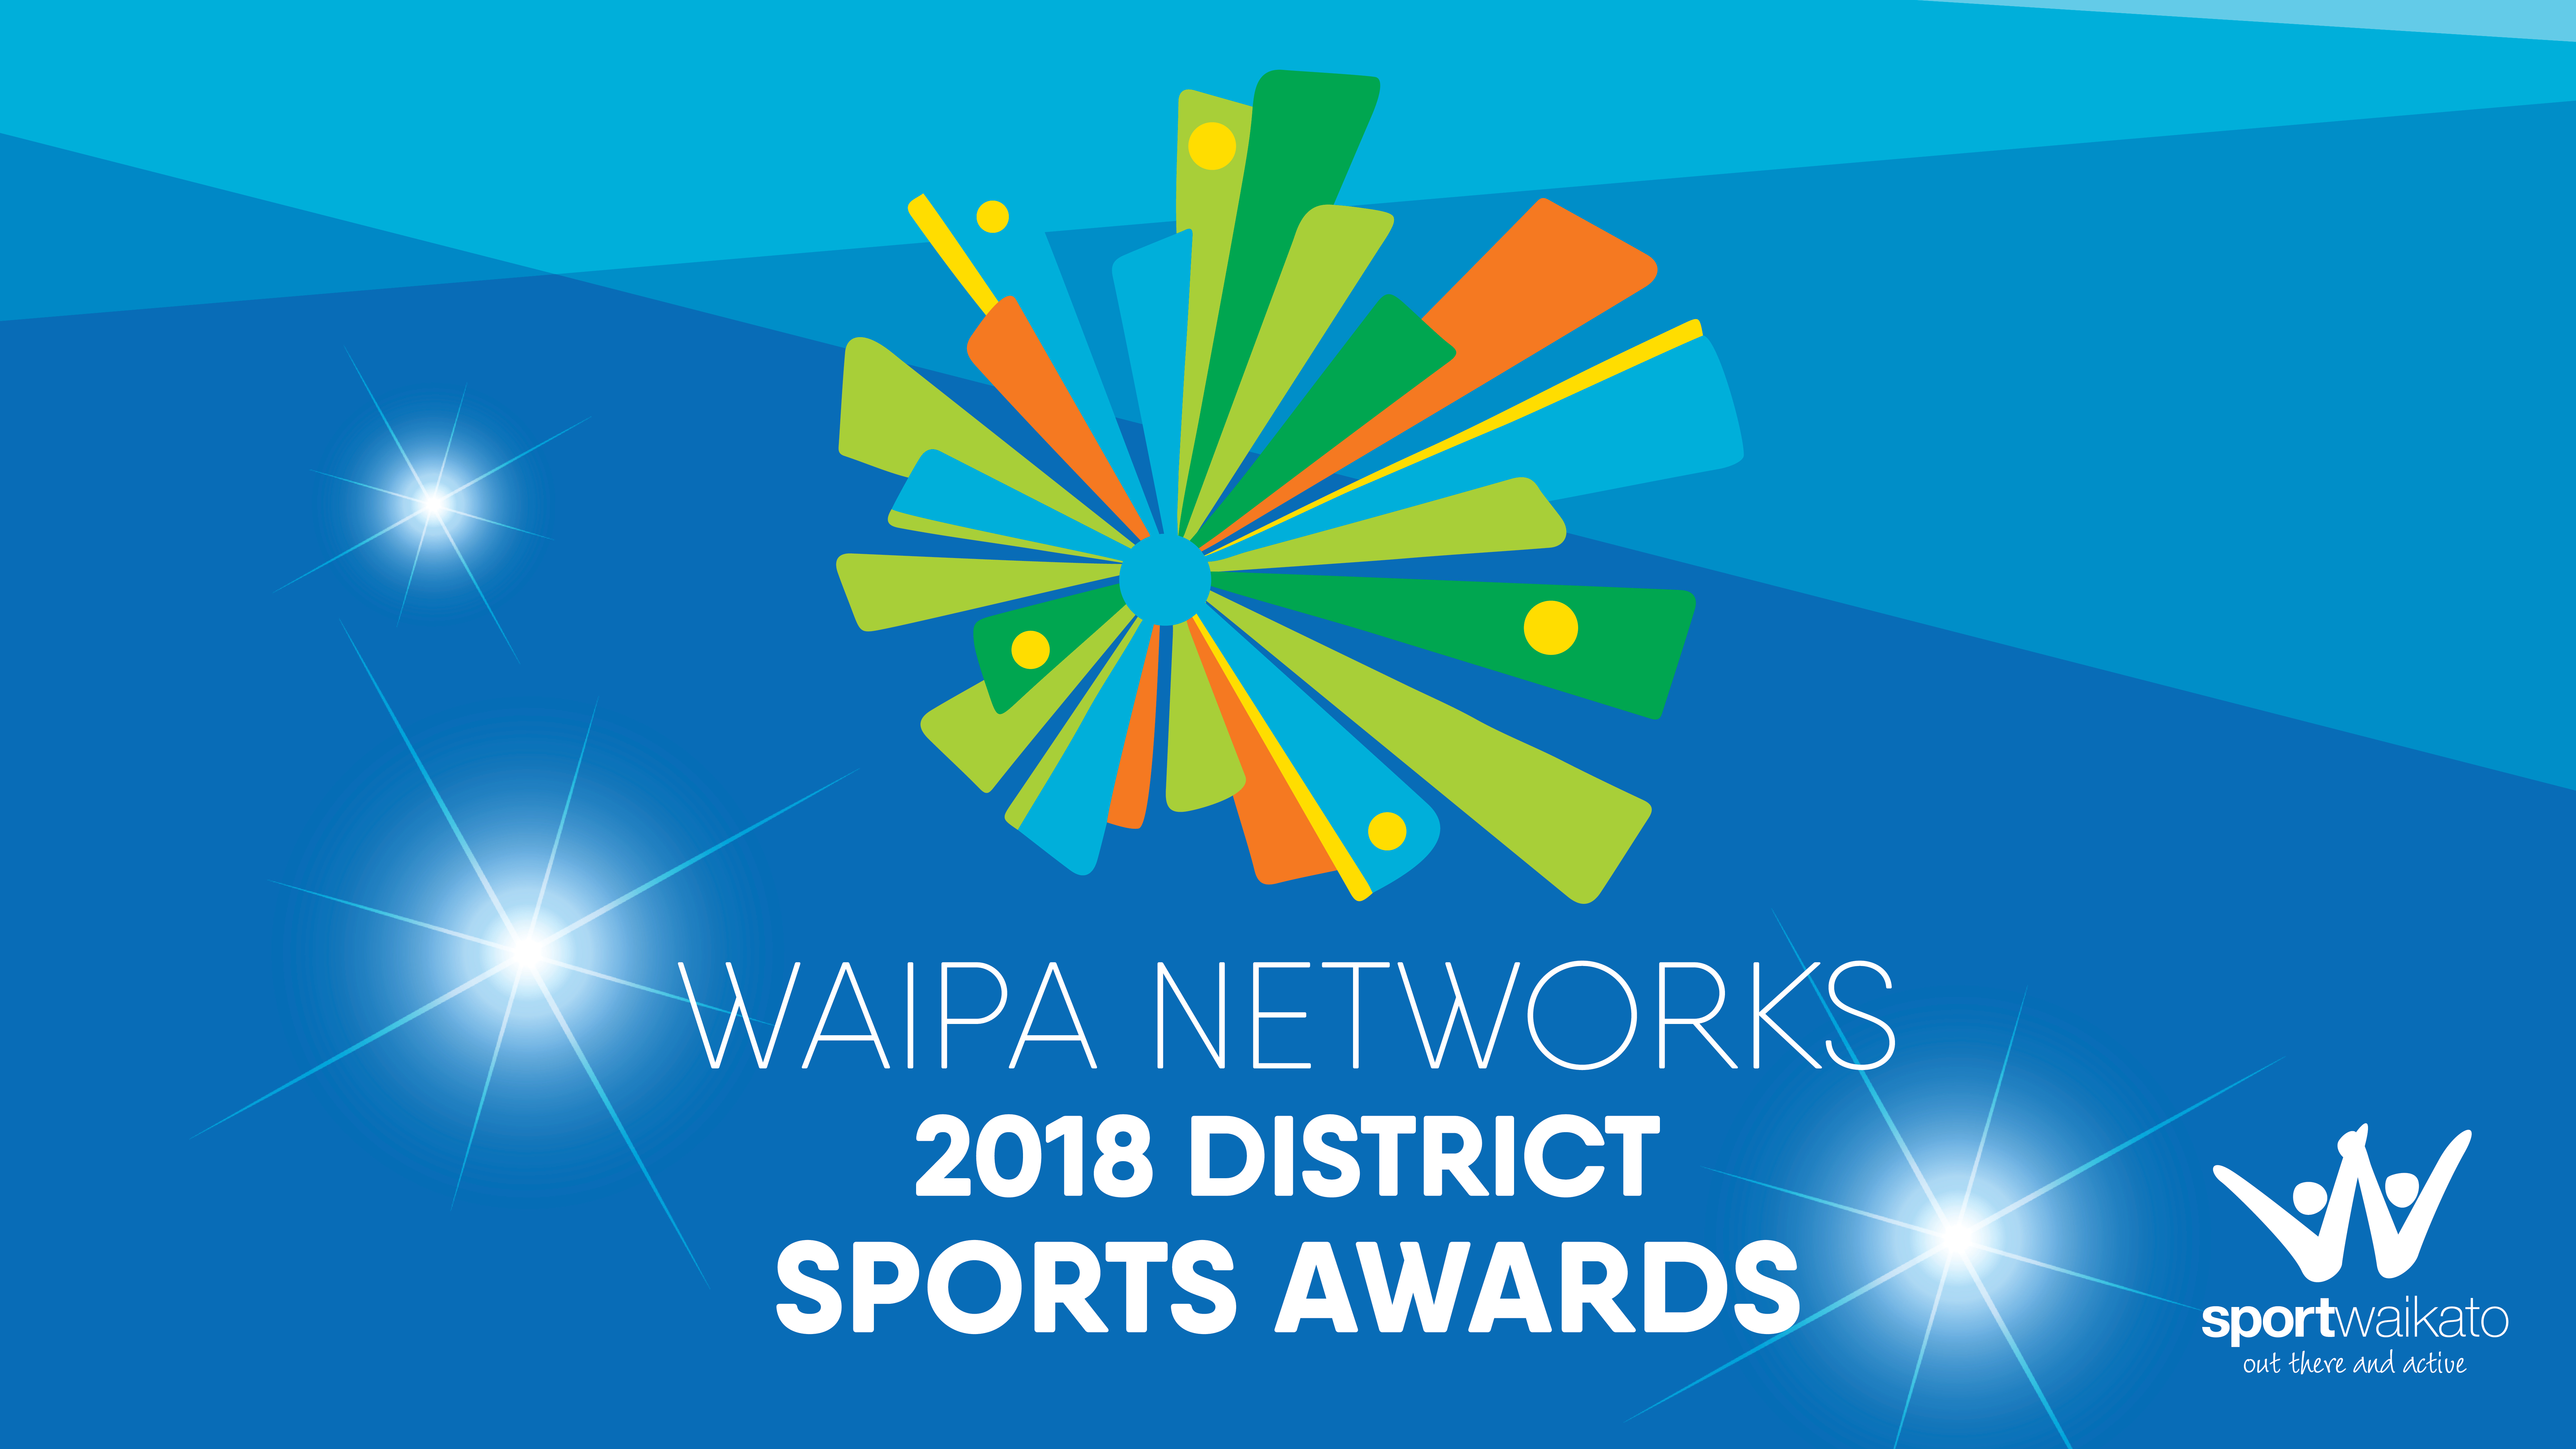 2018 Waipa Networks Sports Awards nominees announced! 